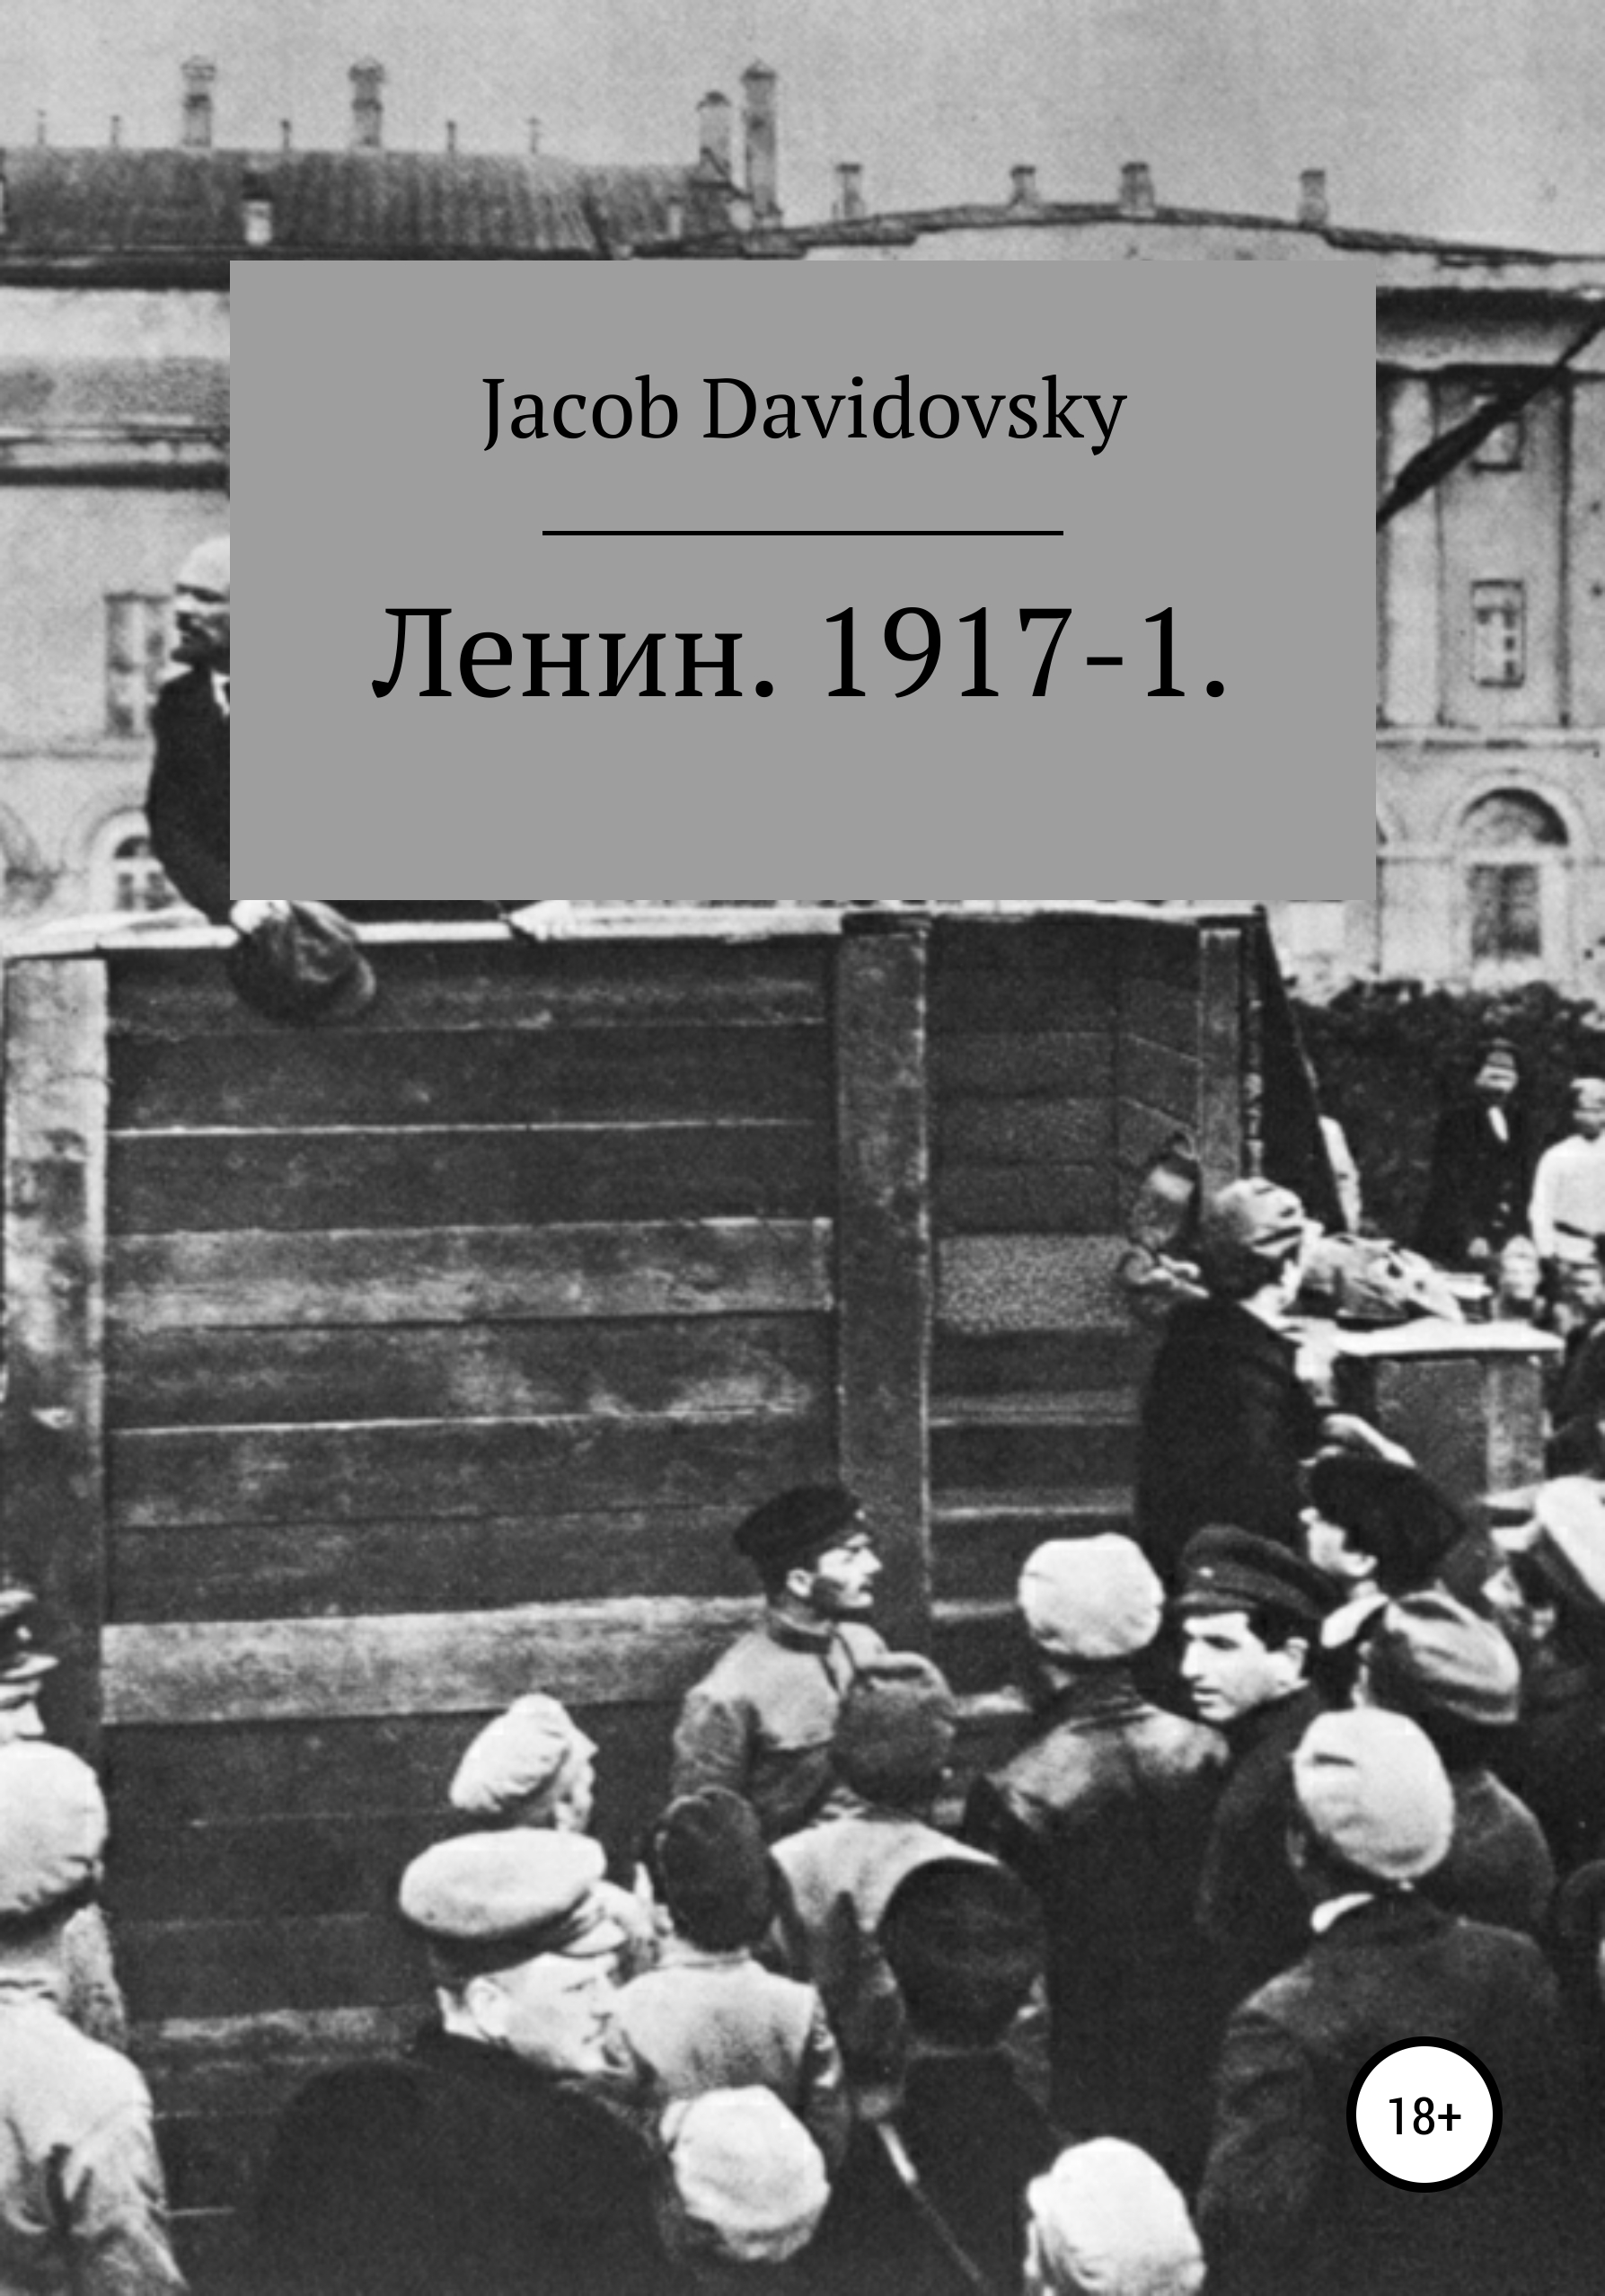 Ленин. 1917-1 – Jacob Davidovsky